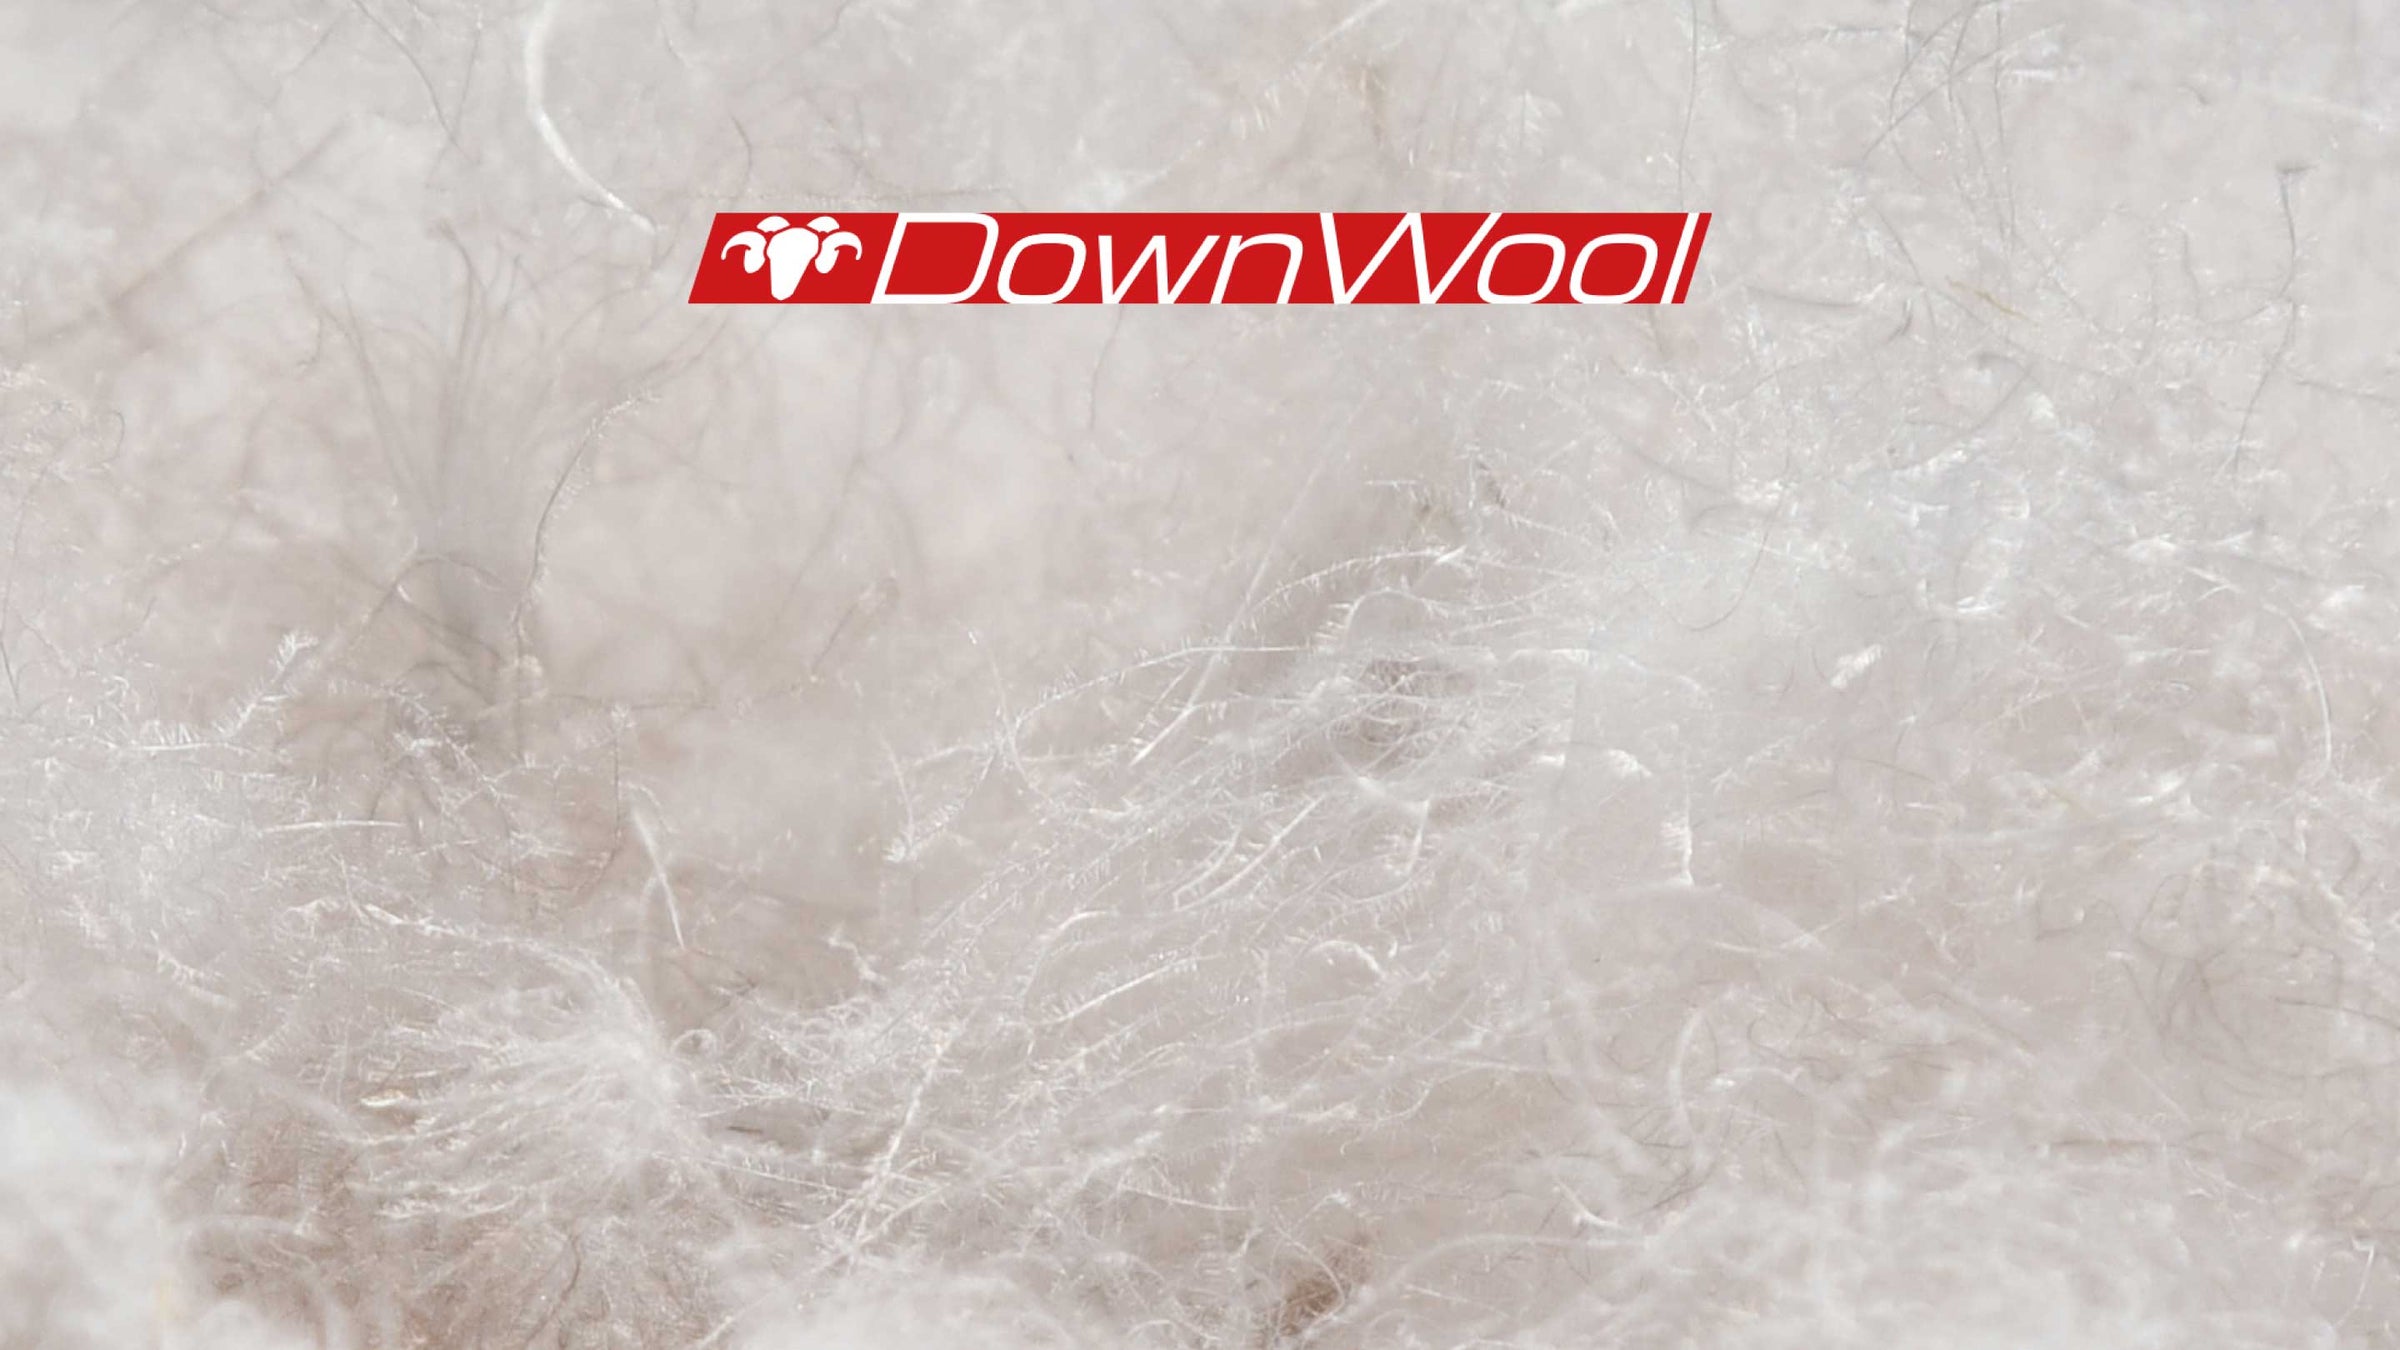 DownWool Isolation aus Daune und Wolle